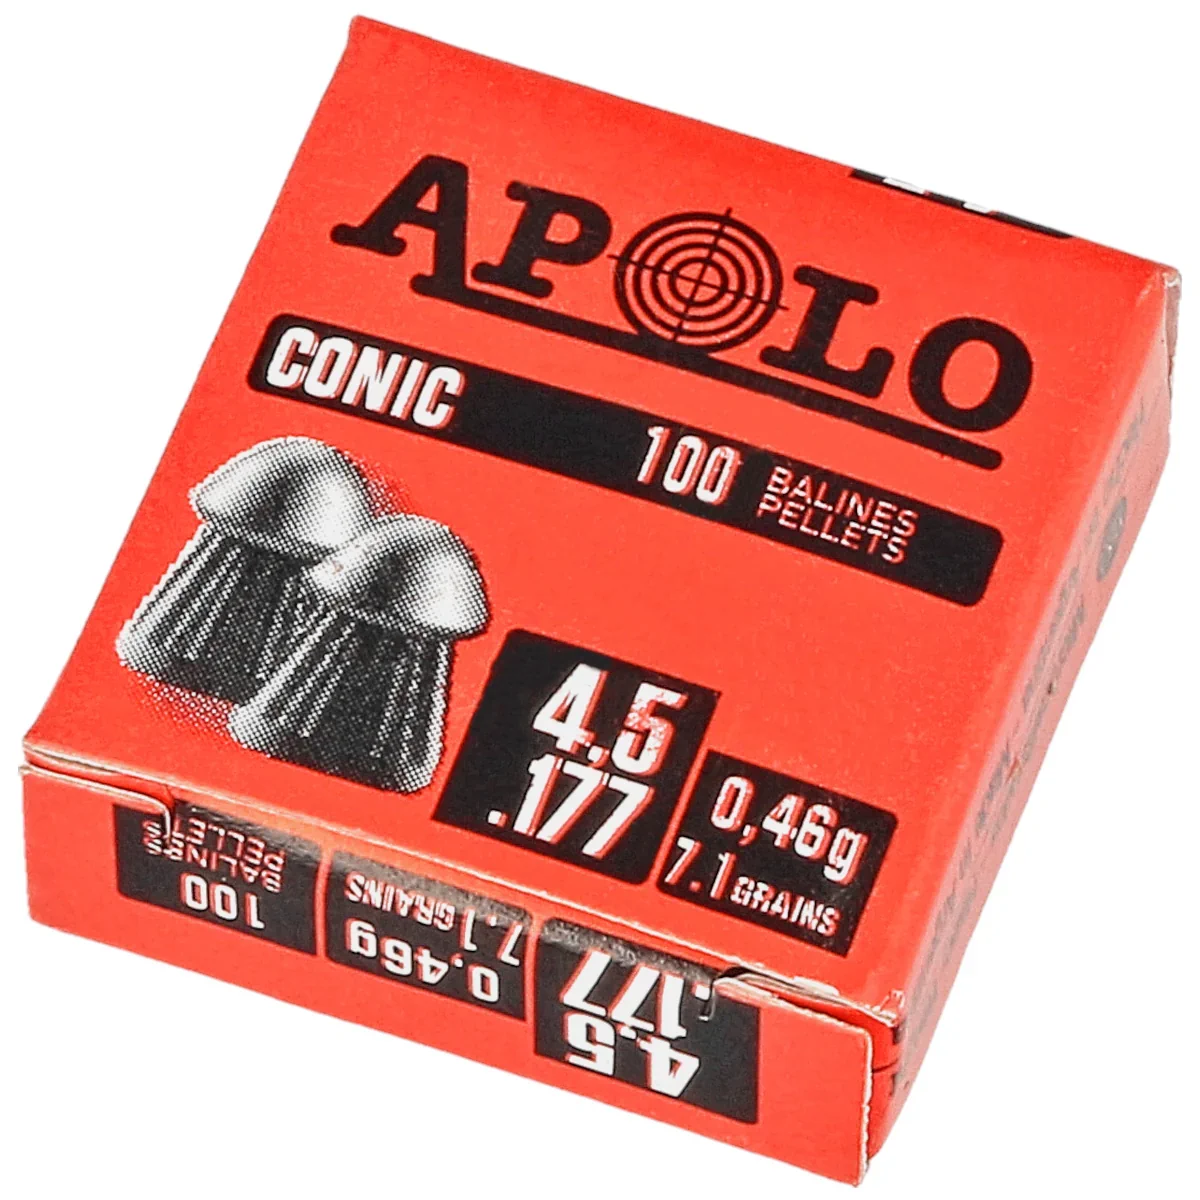 Apolo Conic .177/4.5 mm AirGun Pellets, 100 pcs. 0.46g/7.1gr (10001)